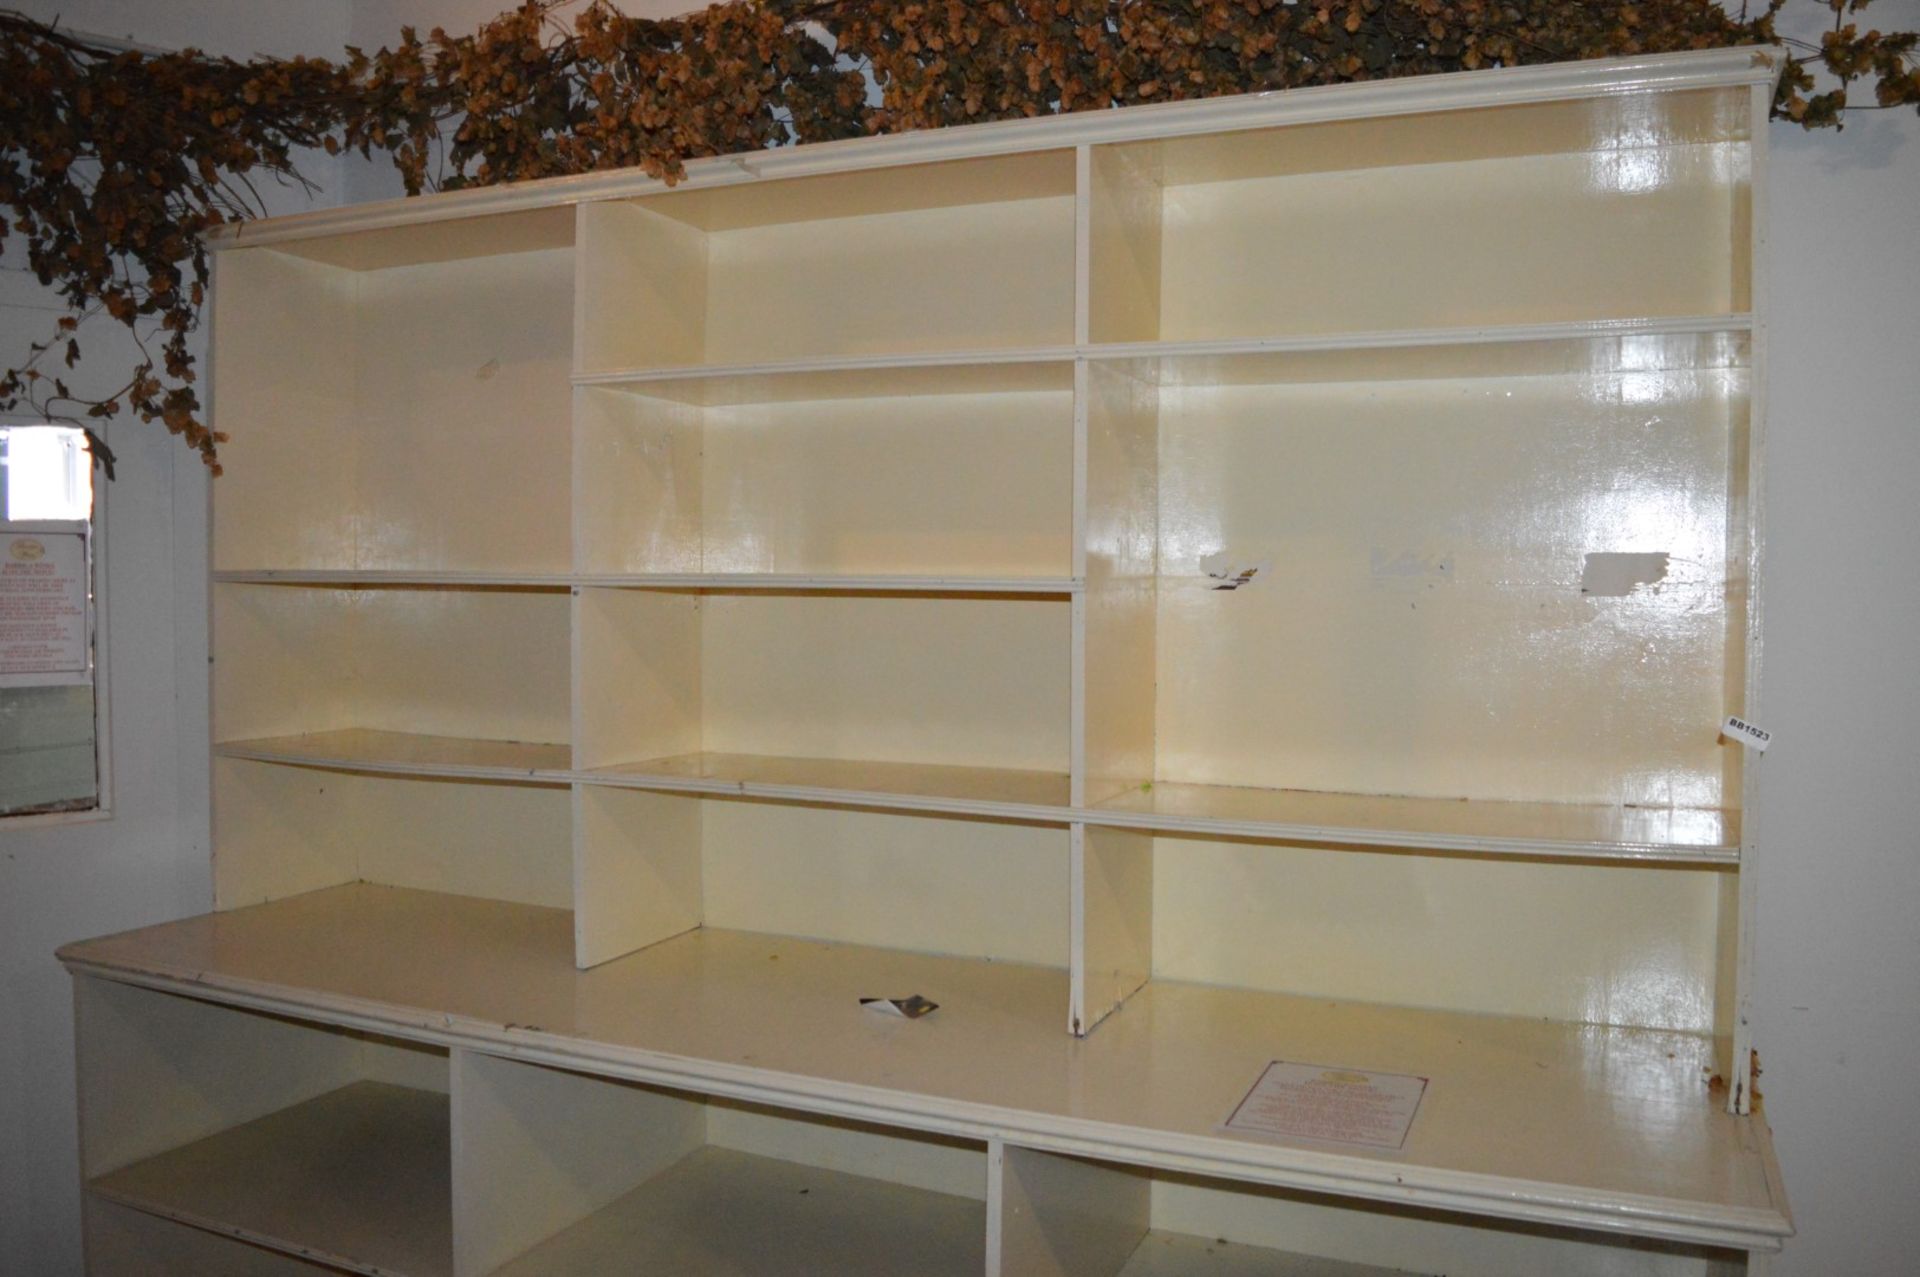 1 x Large Shelf Unit With Glass Shelves - H198 x W247 x D64 cms - Ref BB1523 GF - CL351 - - Image 3 of 3